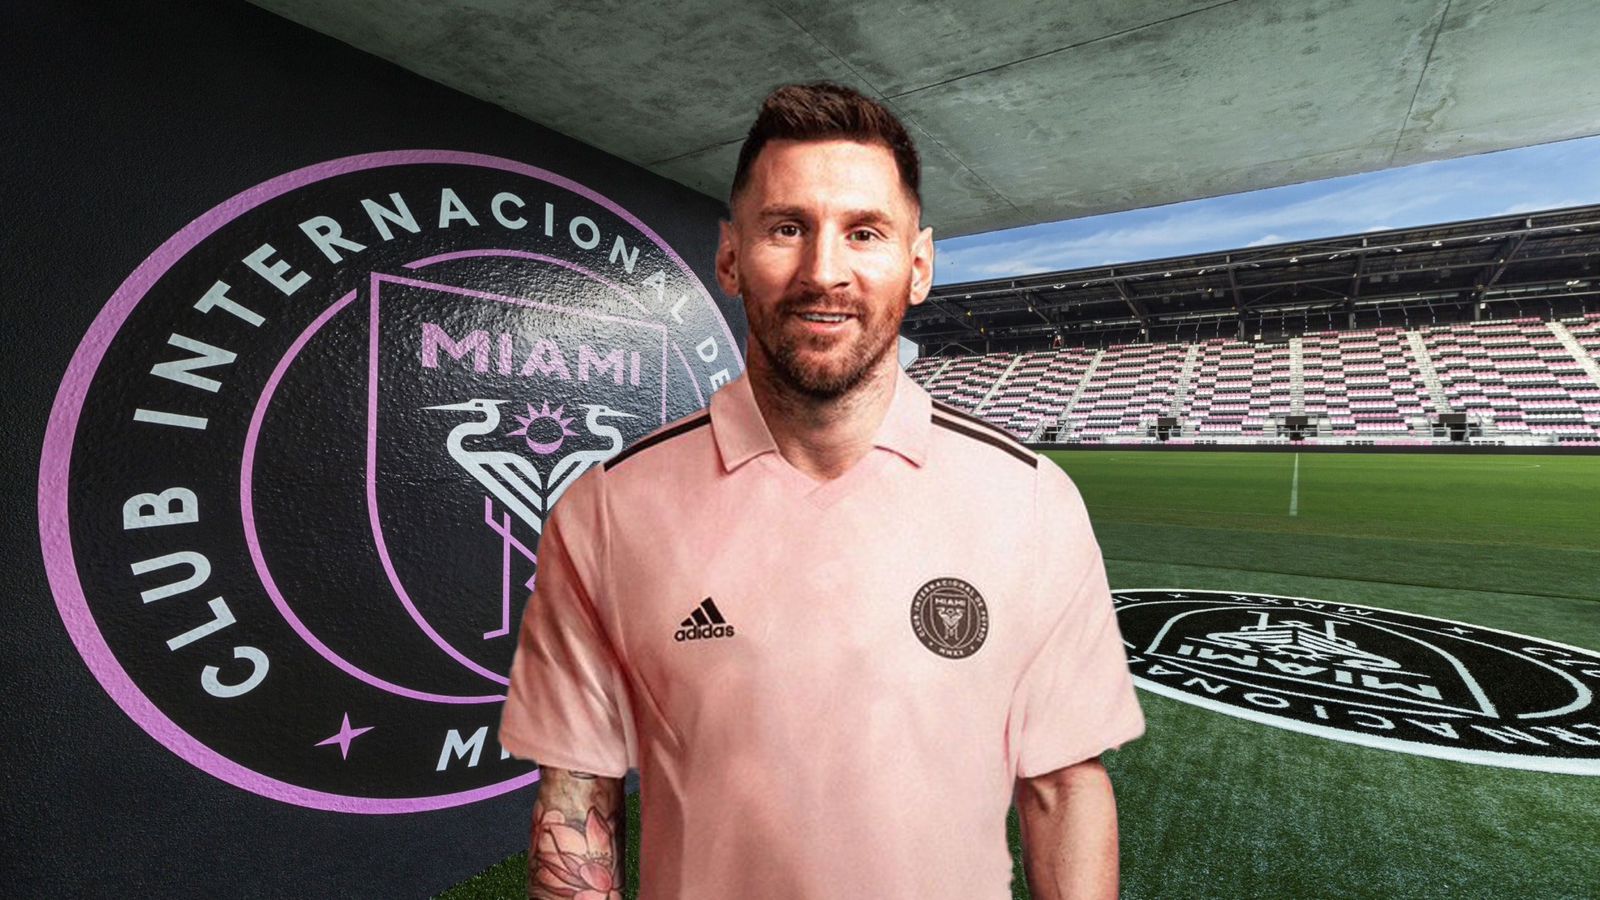 La camiseta de Lionel Messi en el Inter de Miami ya se vende en 130 dólares